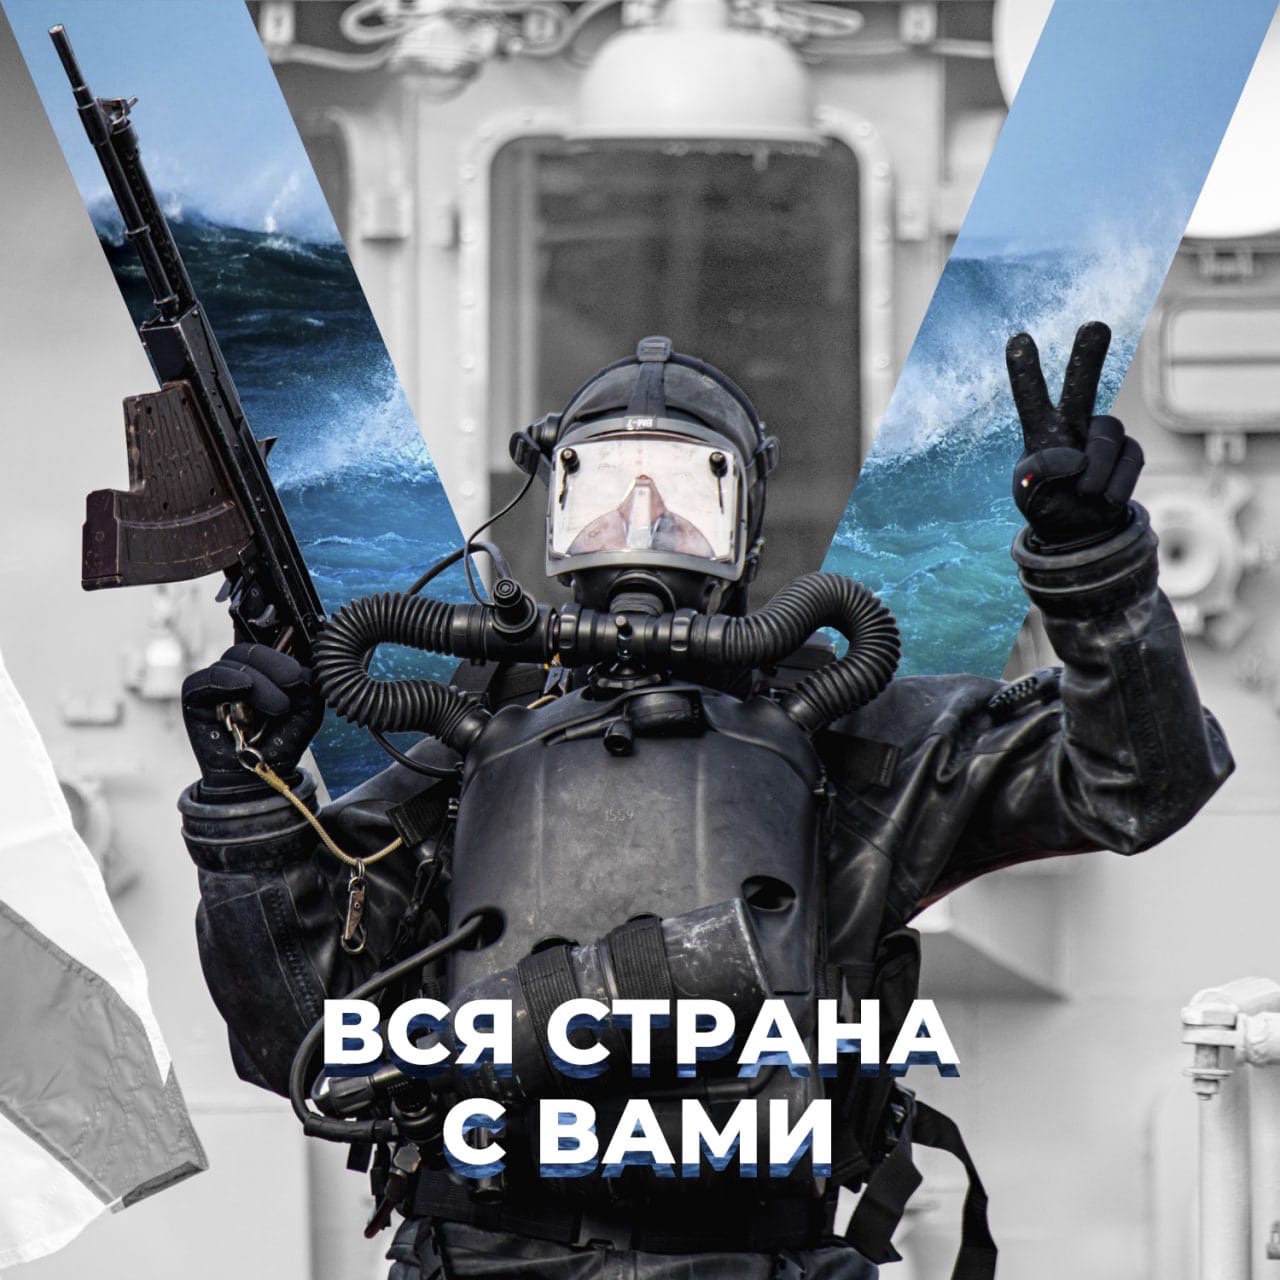 Нина Забеленкова: Никто, кроме нашей армии, нас не защитит